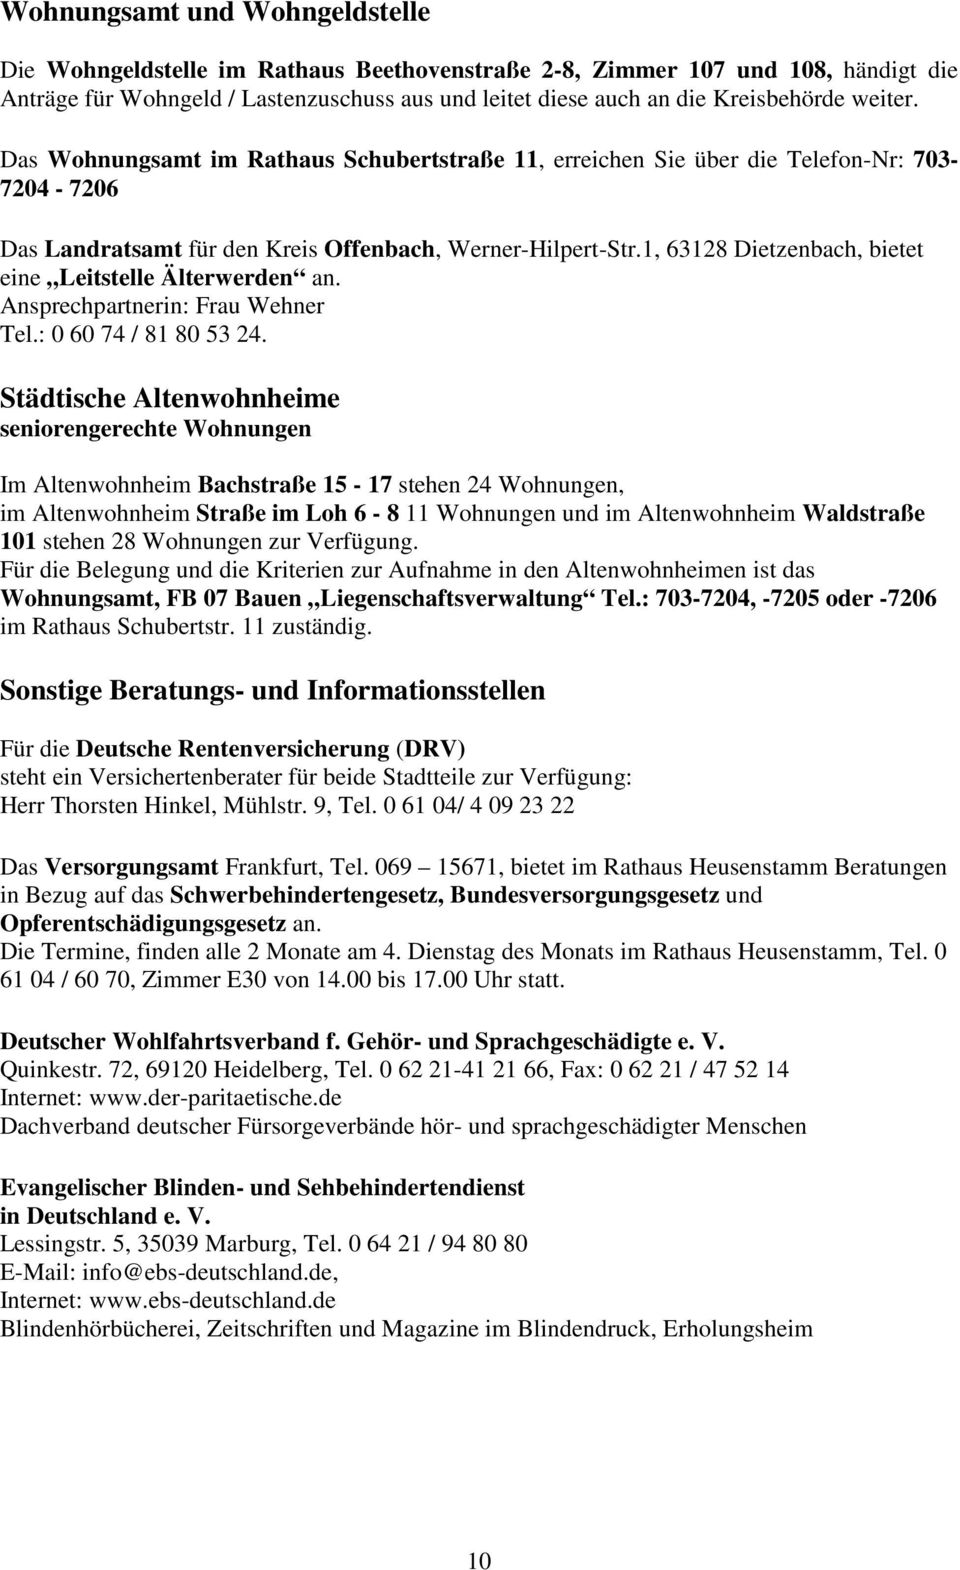 1, 63128 Dietzenbach, bietet eine Leitstelle Älterwerden an. Ansprechpartnerin: Frau Wehner Tel.: 0 60 74 / 81 80 53 24.